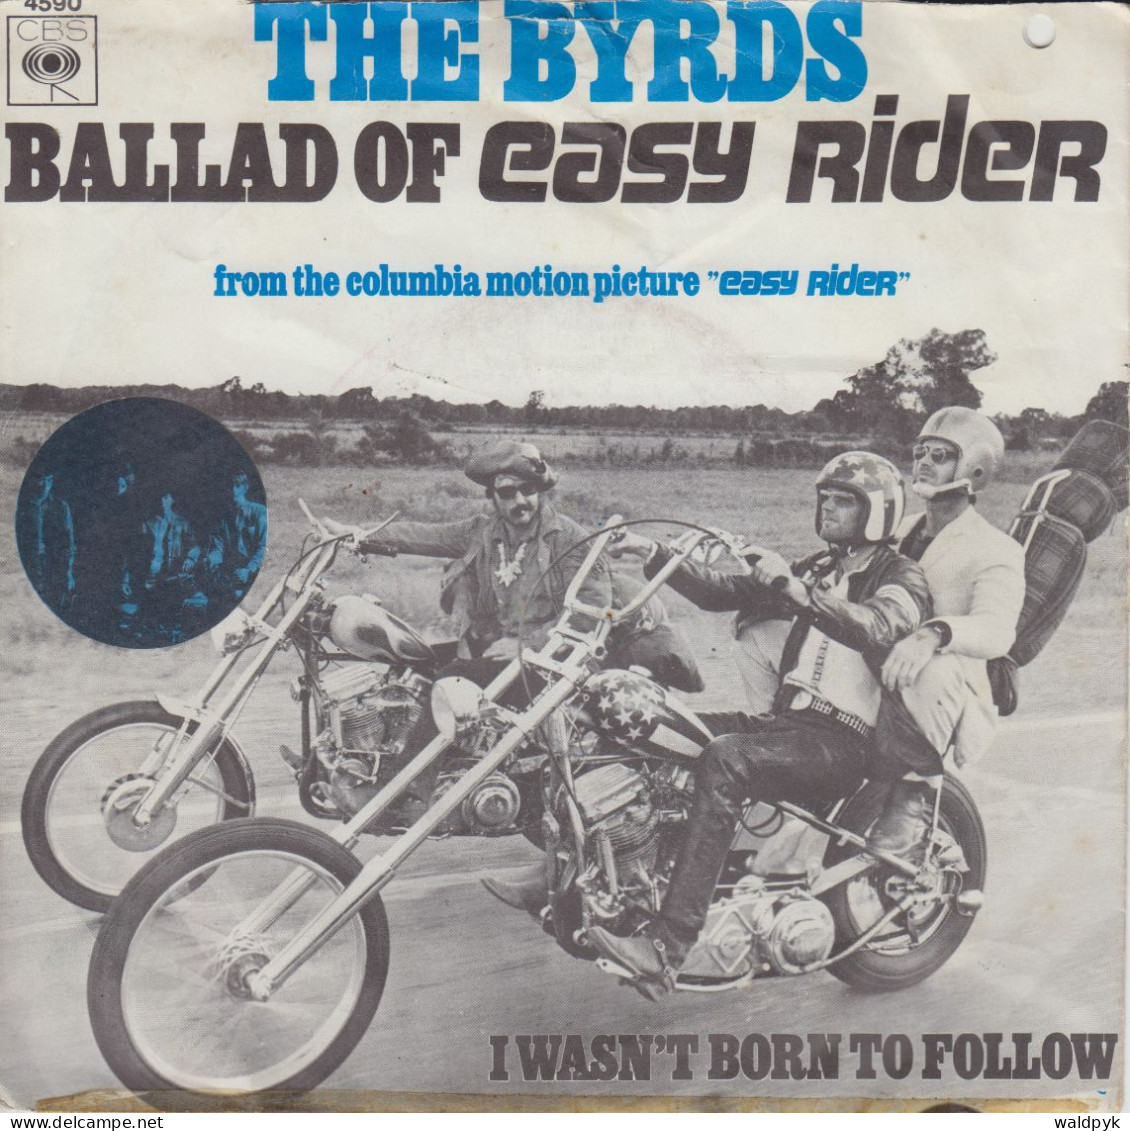 THE BYRDS - Ballad Of Easy Rider - Otros - Canción Inglesa